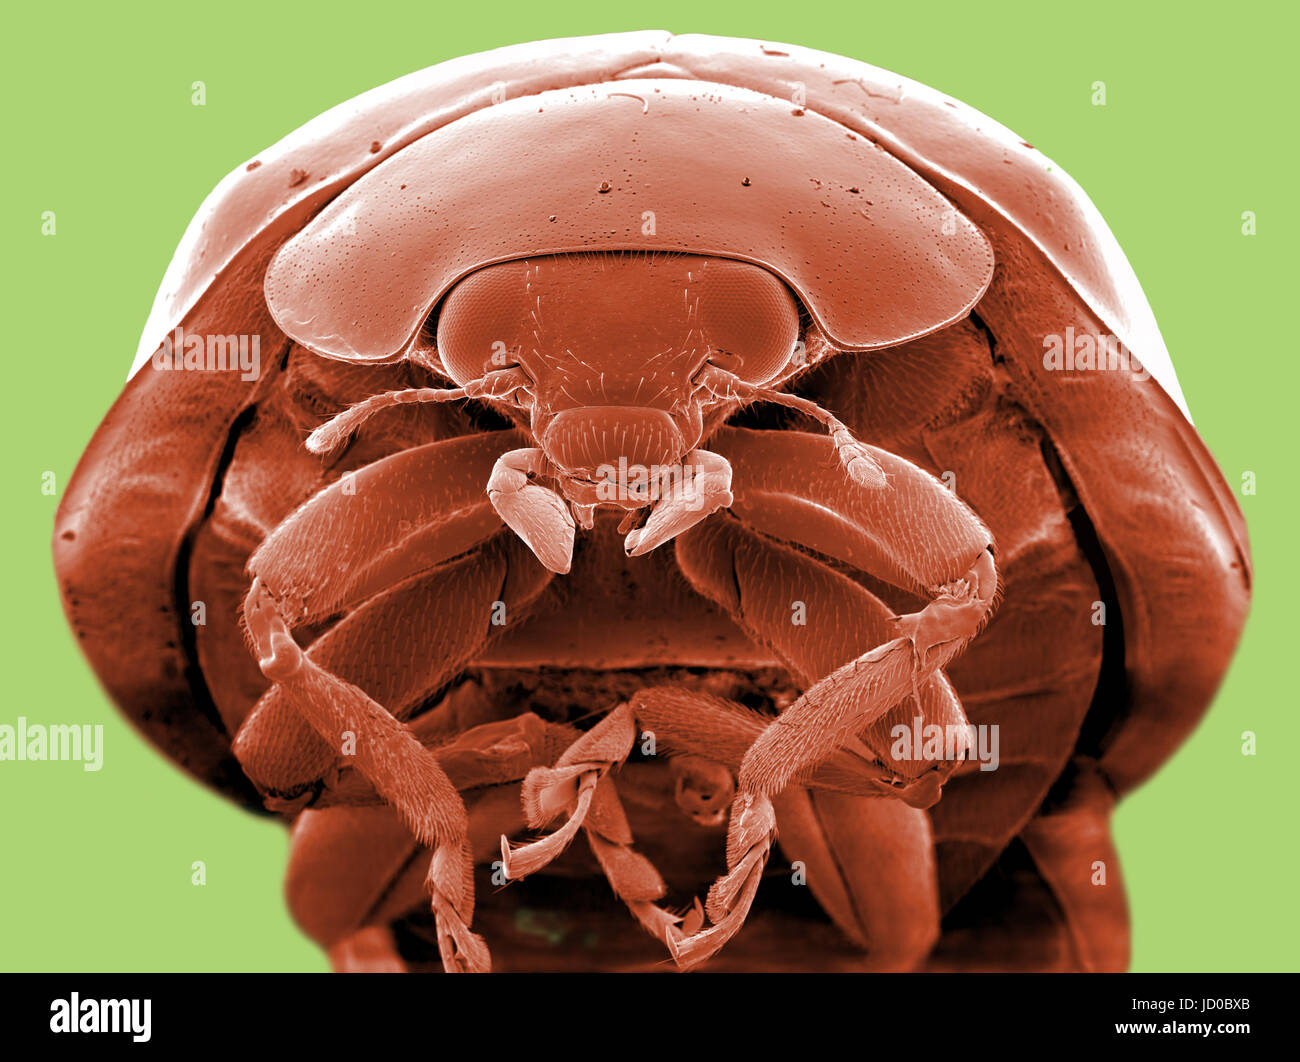 Scansione SEM Immagine al Microscopio Elettronico di una coccinella  coccinella Foto stock - Alamy